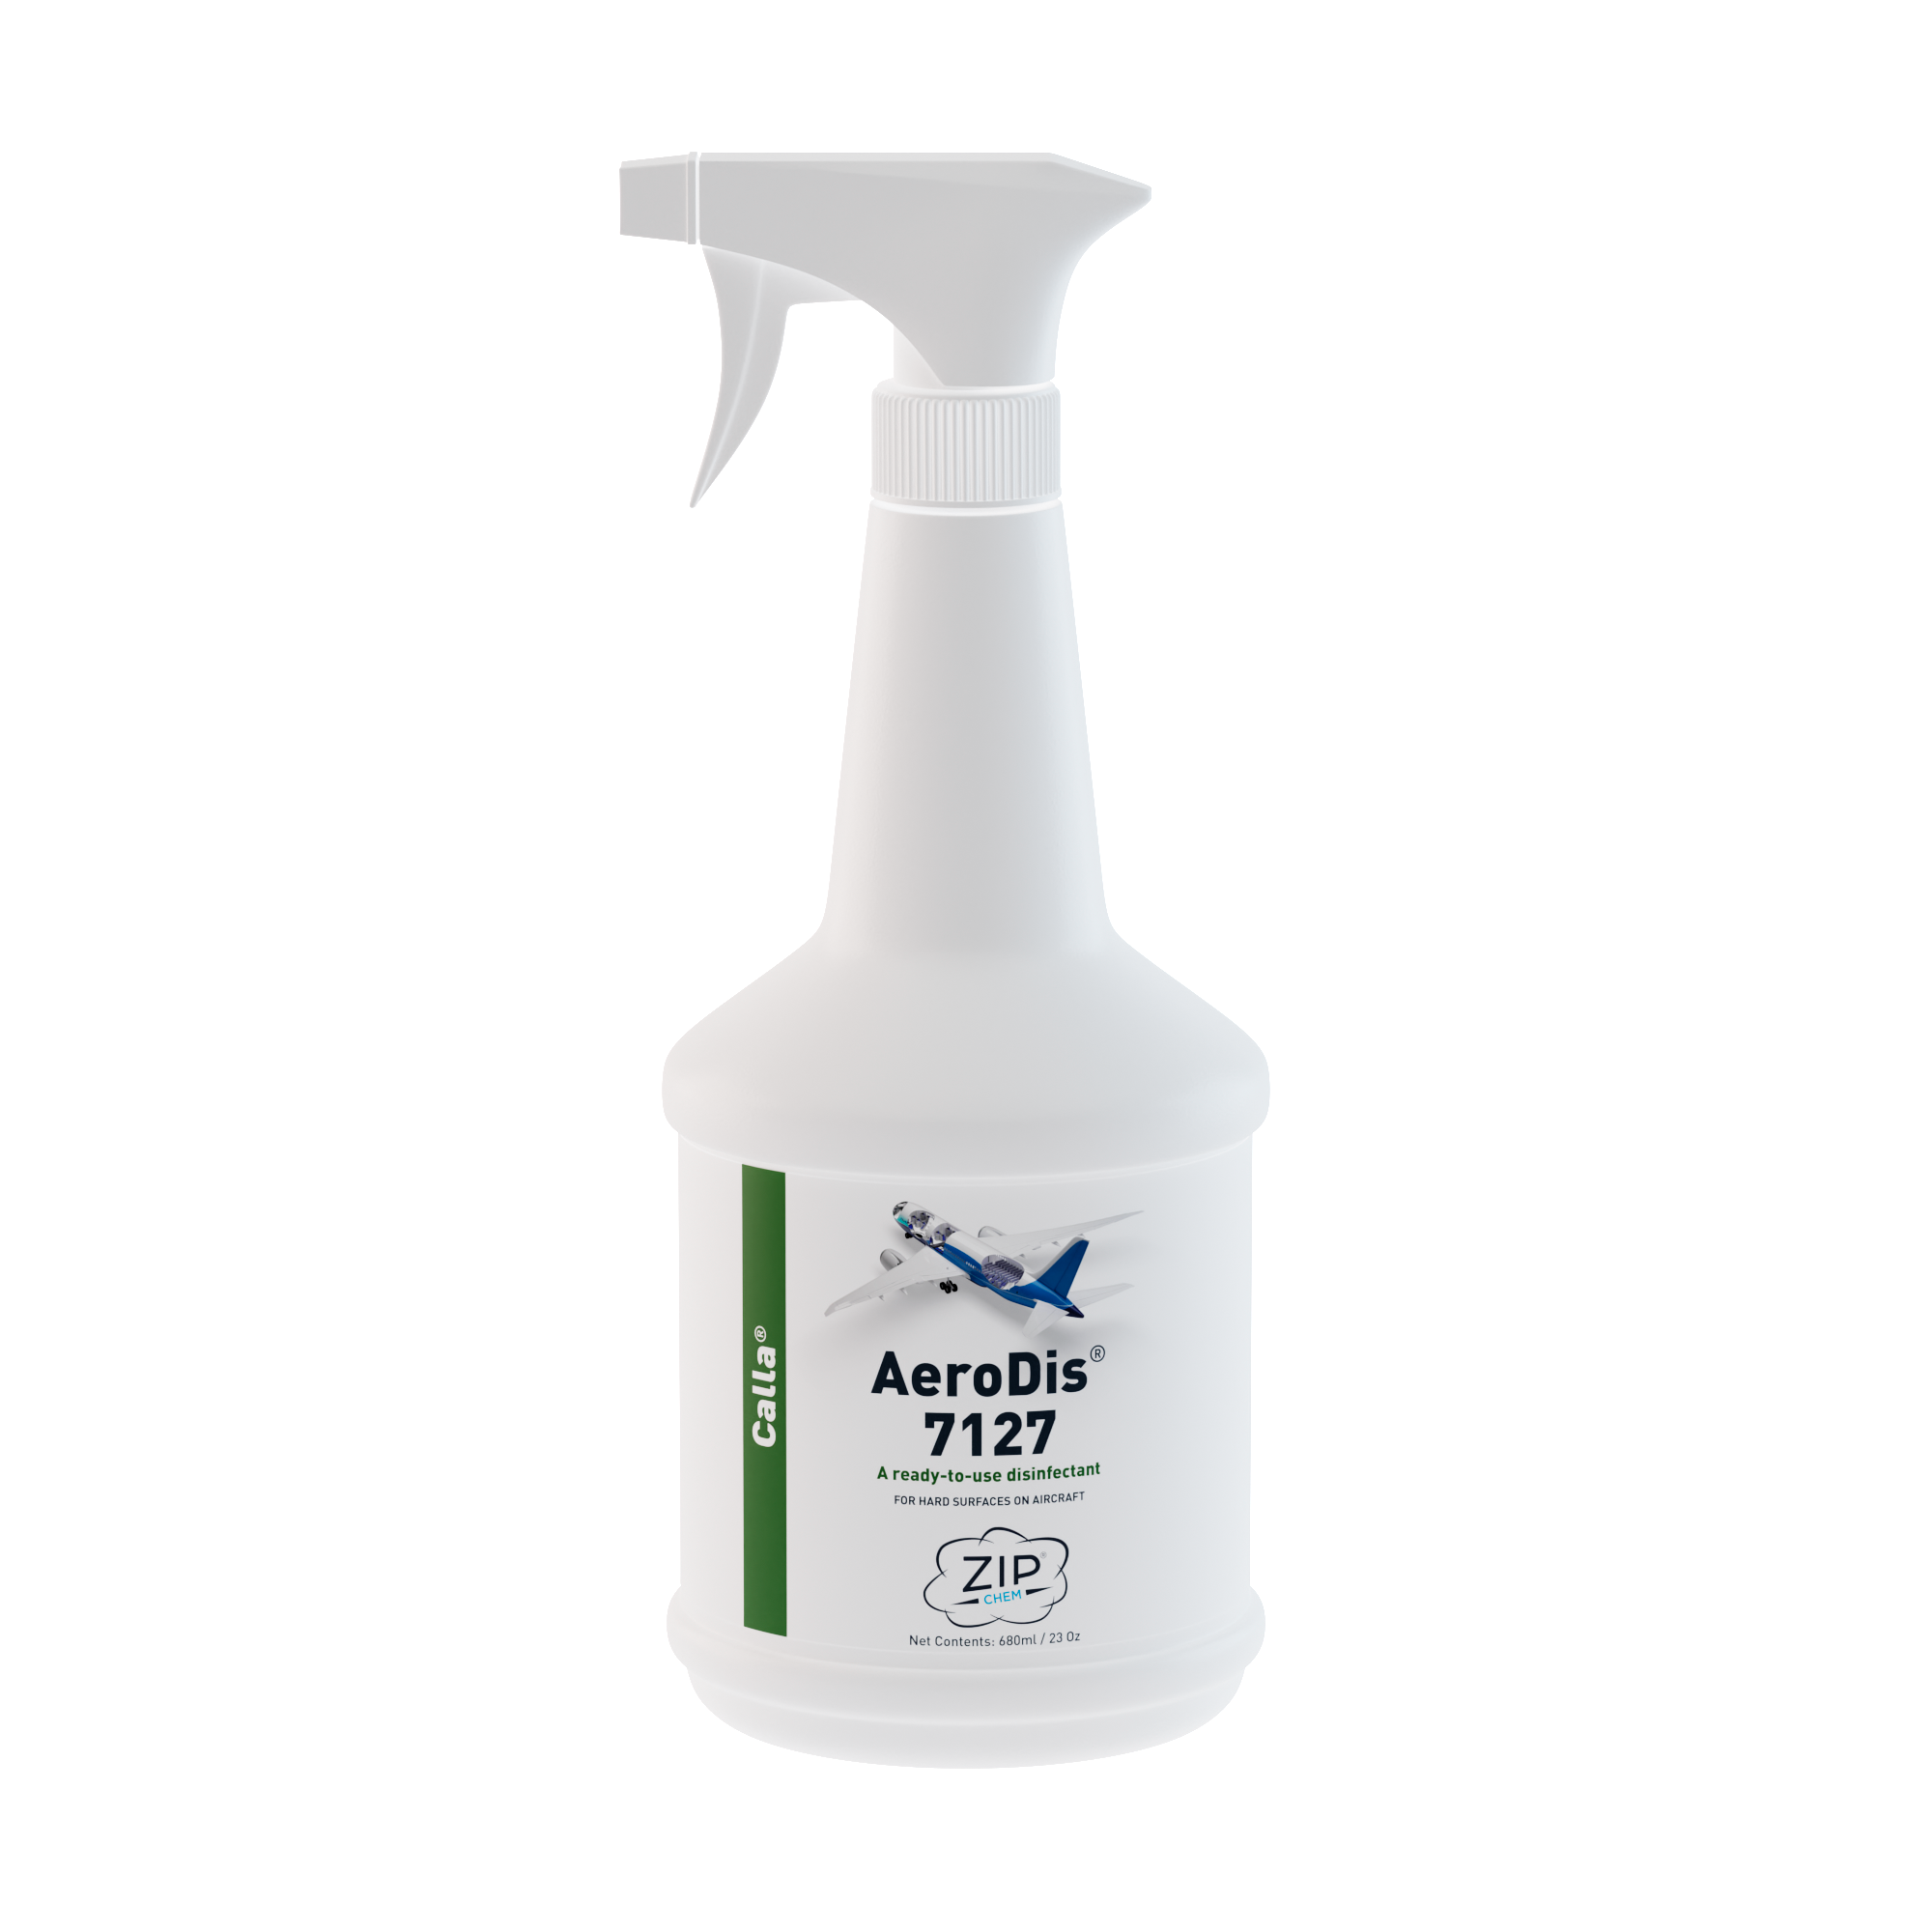  - AeroDis 7127 Ready-to-use Disinfectant - 23 OZ Bottle